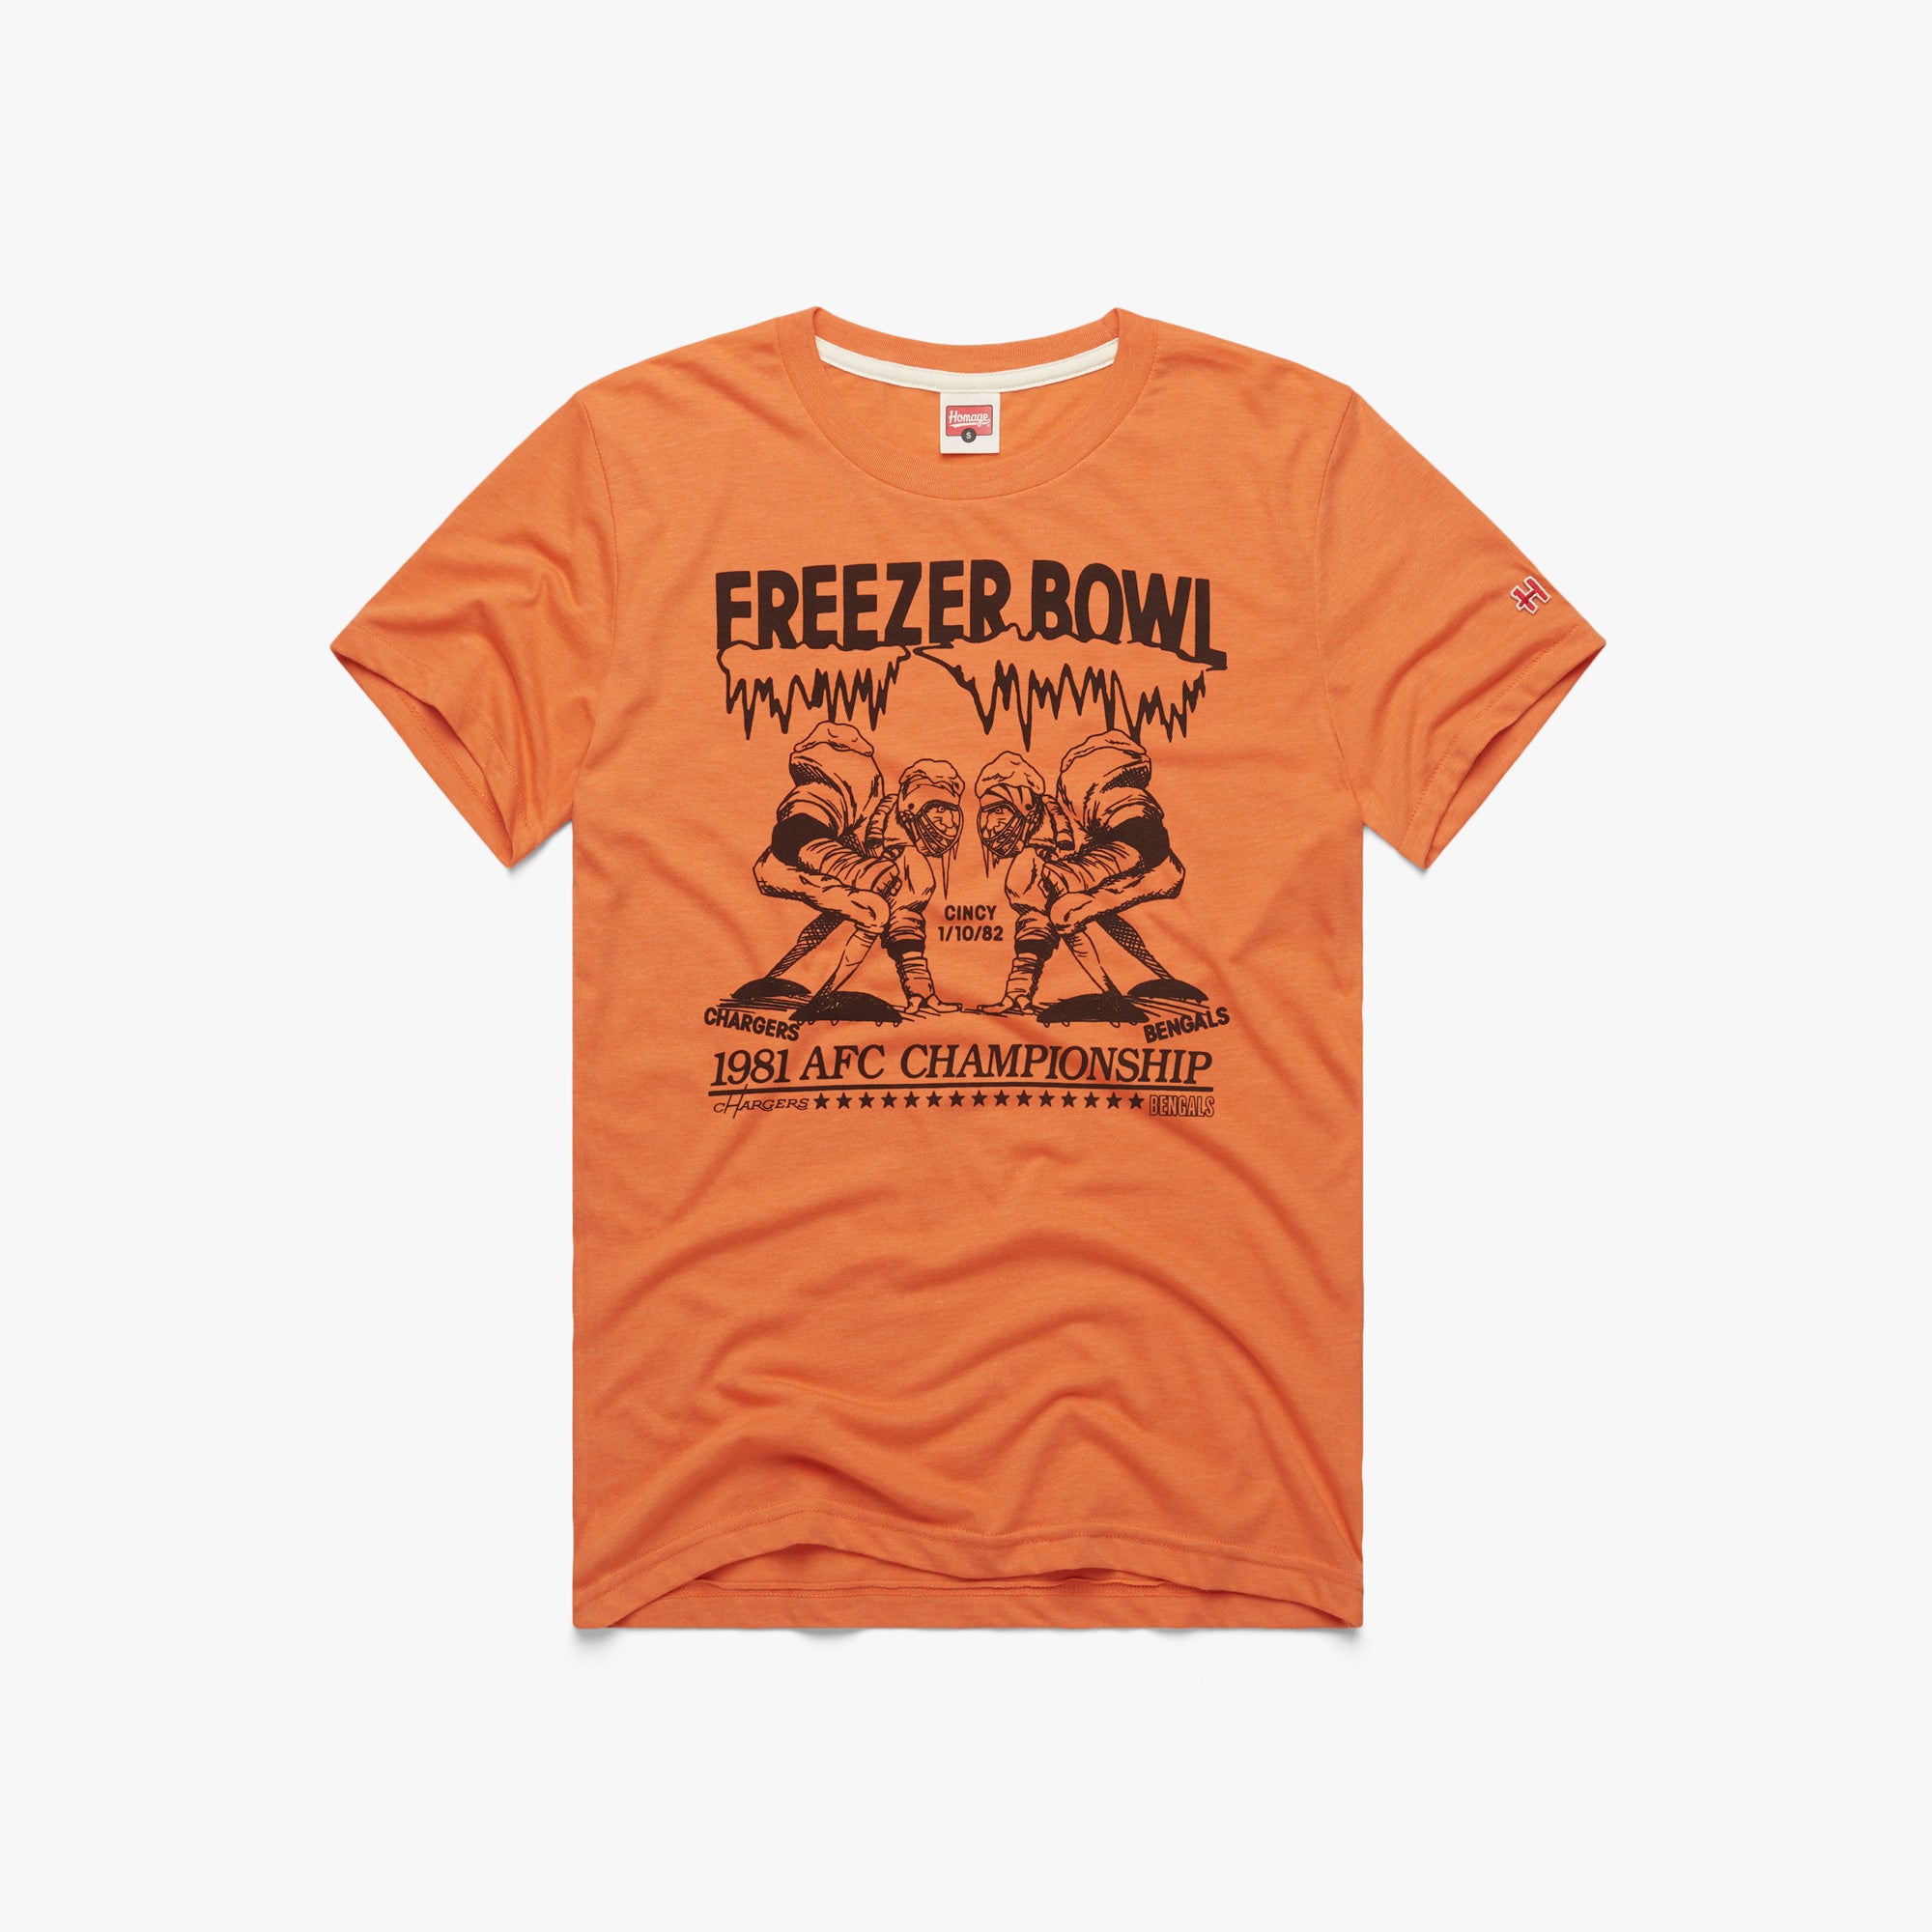 Cincinnati Bengals Football Team Nfl Super Bowl T Shirt Vintage